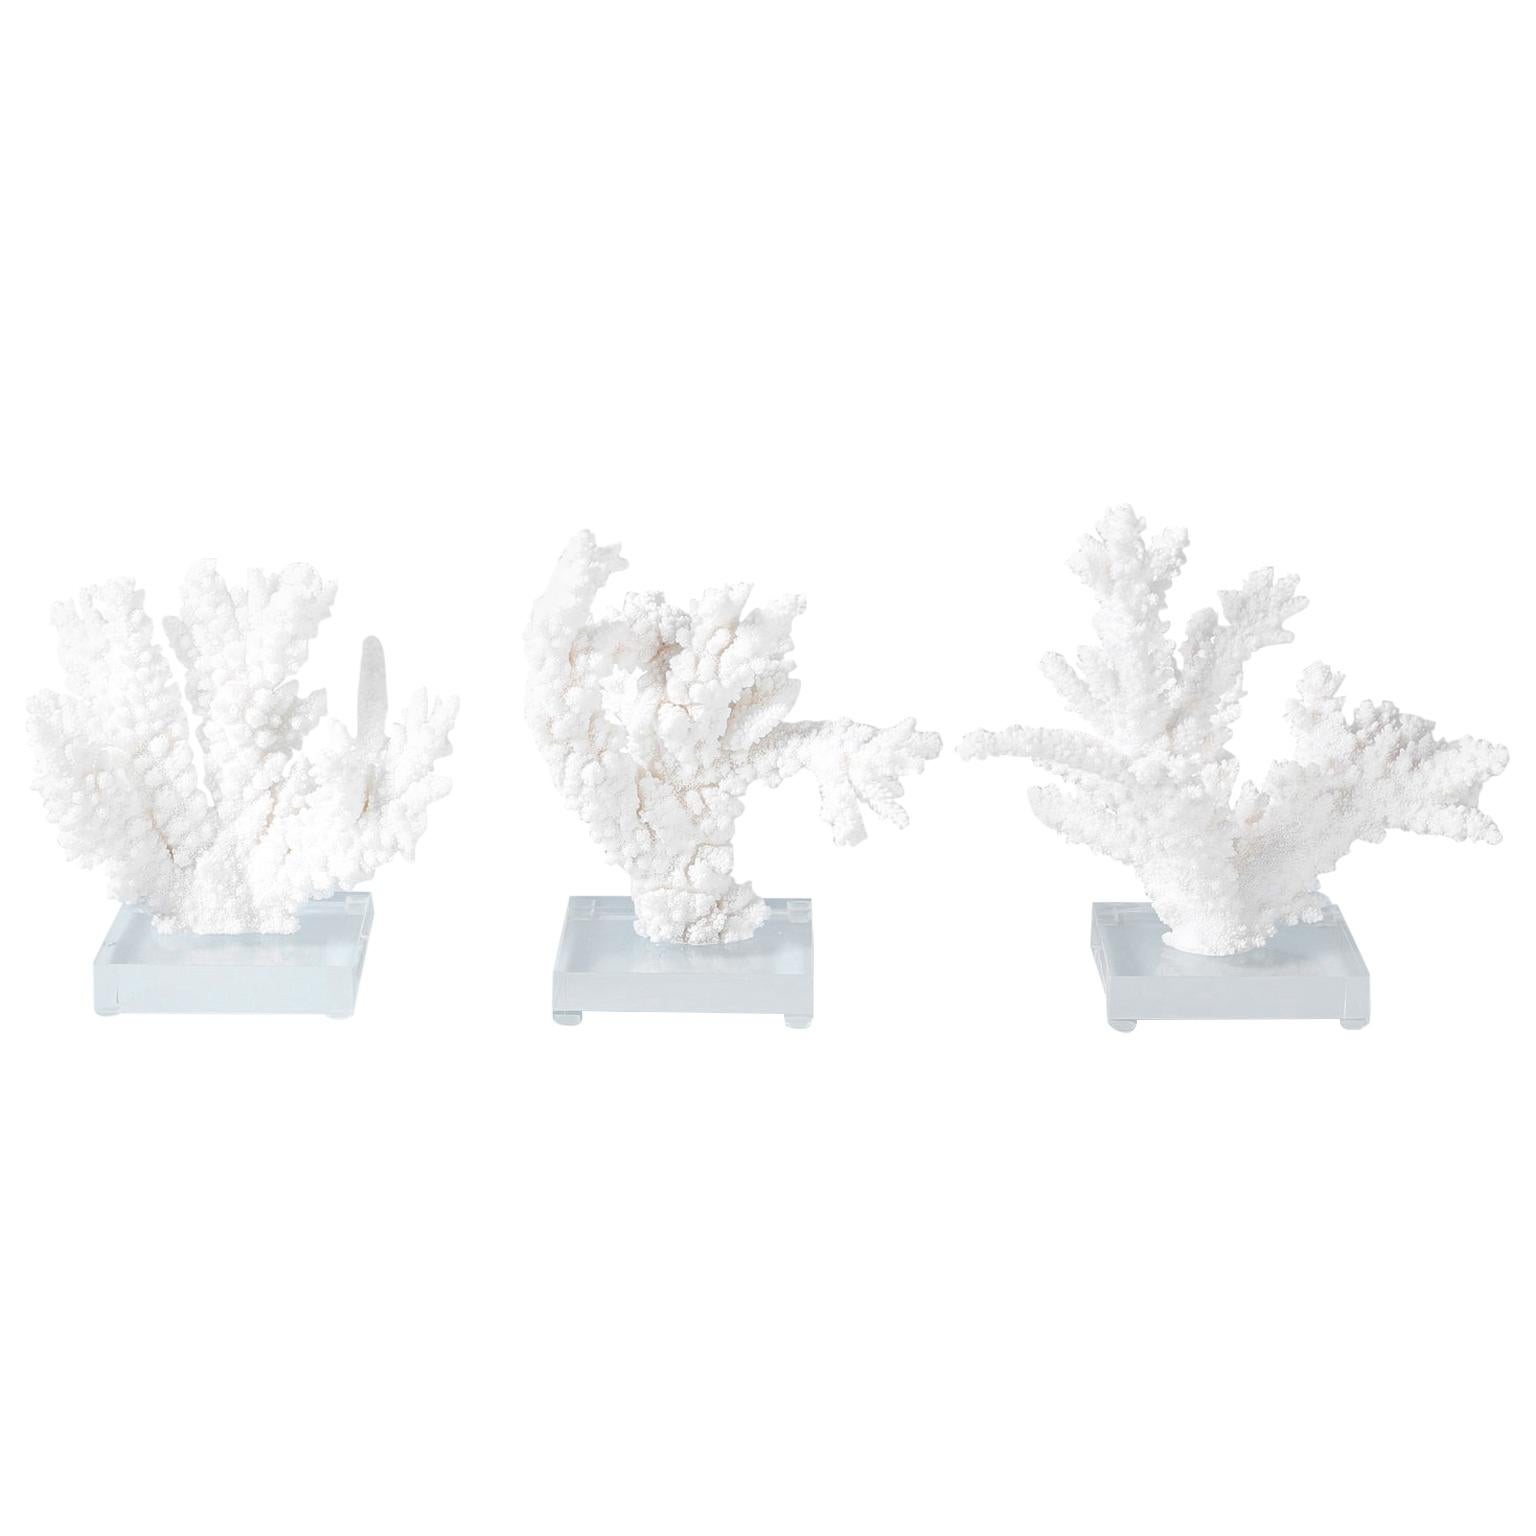 Trois spécimens de corail blanc sur lucite, vendus individuellement